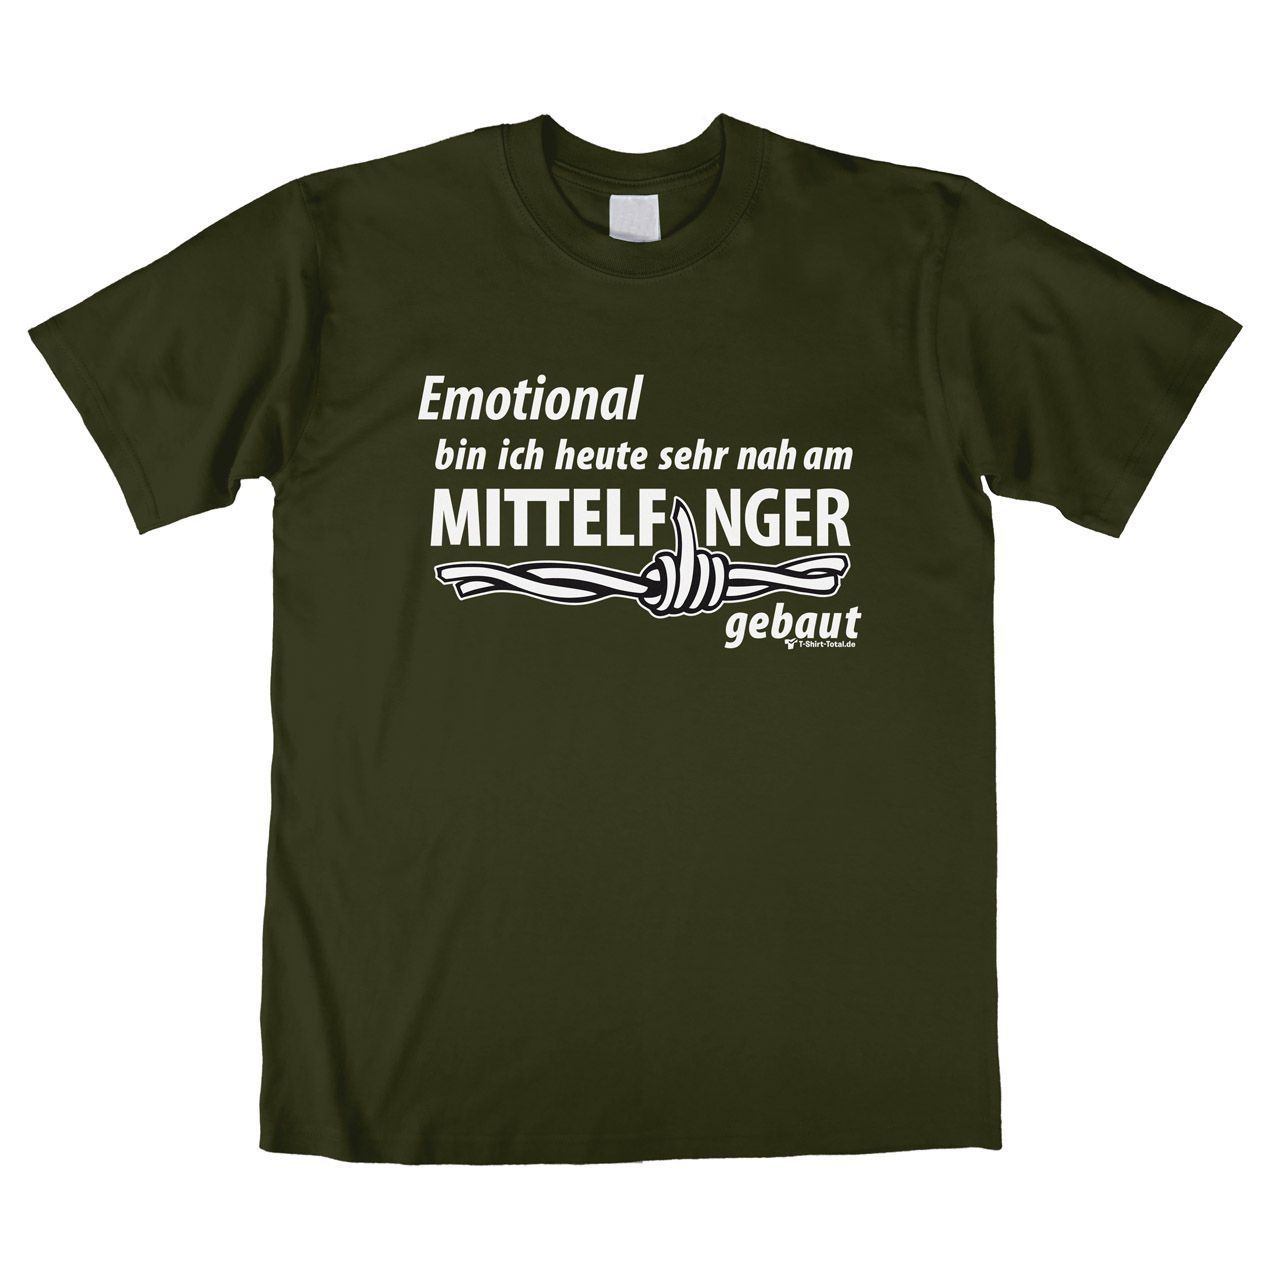 Mittelfinger Unisex T-Shirt khaki Extra Large